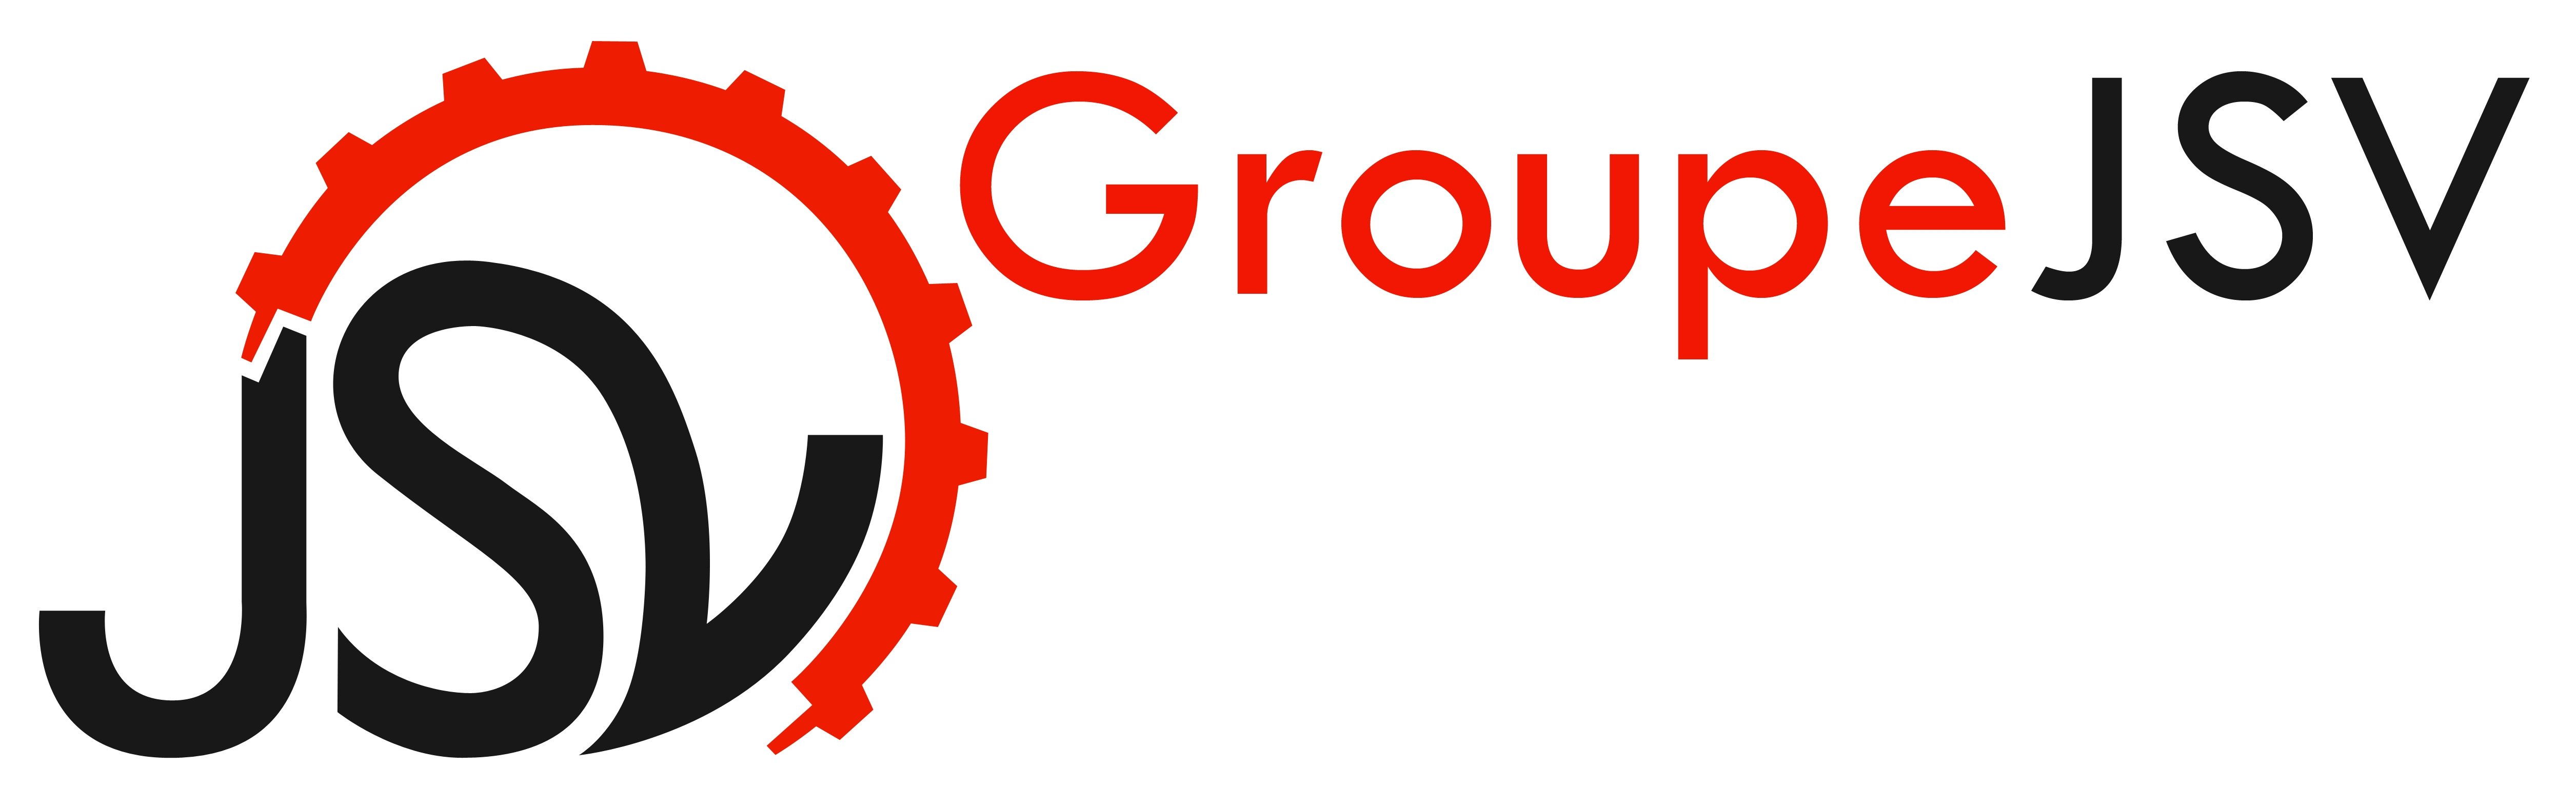 LOGO_Groupe-JSV